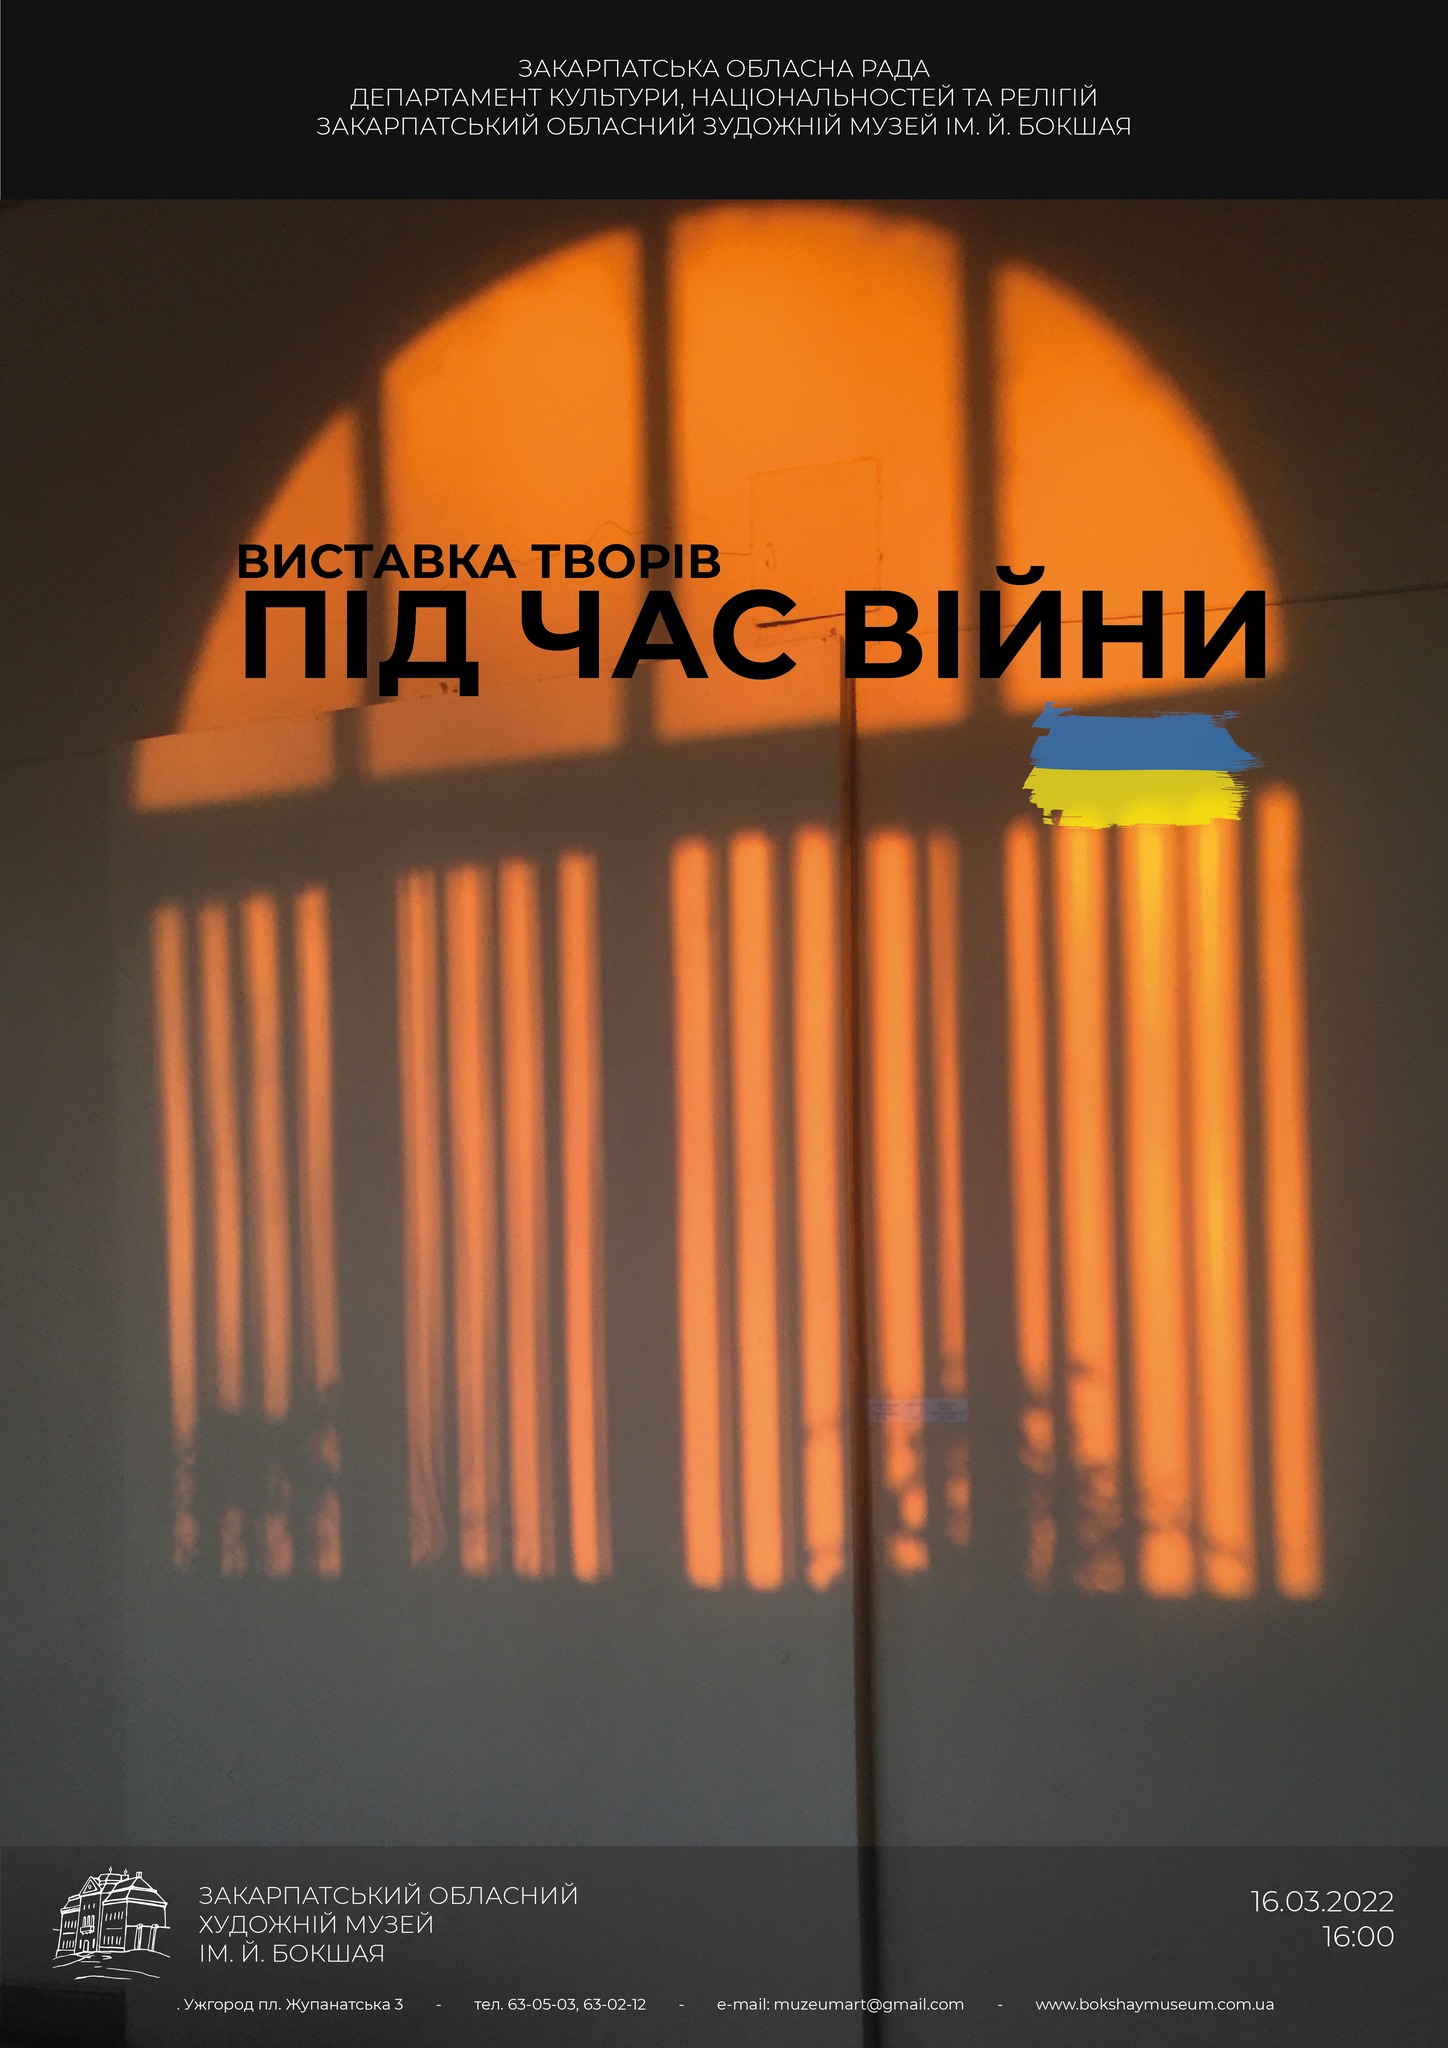 В обласному художньому музеї в Ужгороді запрацювала платформа для митців України "Під час війни"